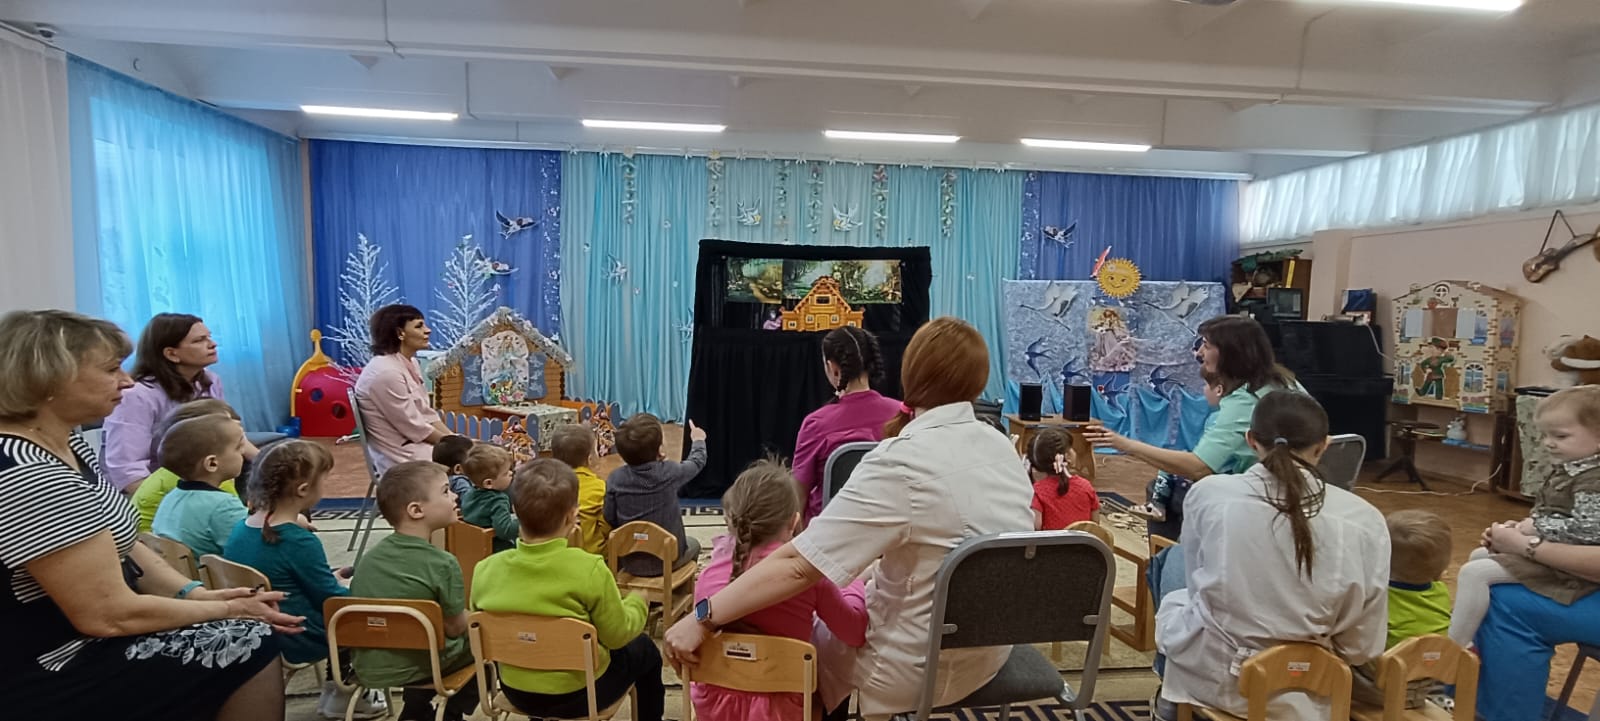 Волонтеры Церкви Иисуса Христа Святых последних дней показали кукольные спектакли для детей в Омске. Автор фото: Чернышков Контантин.